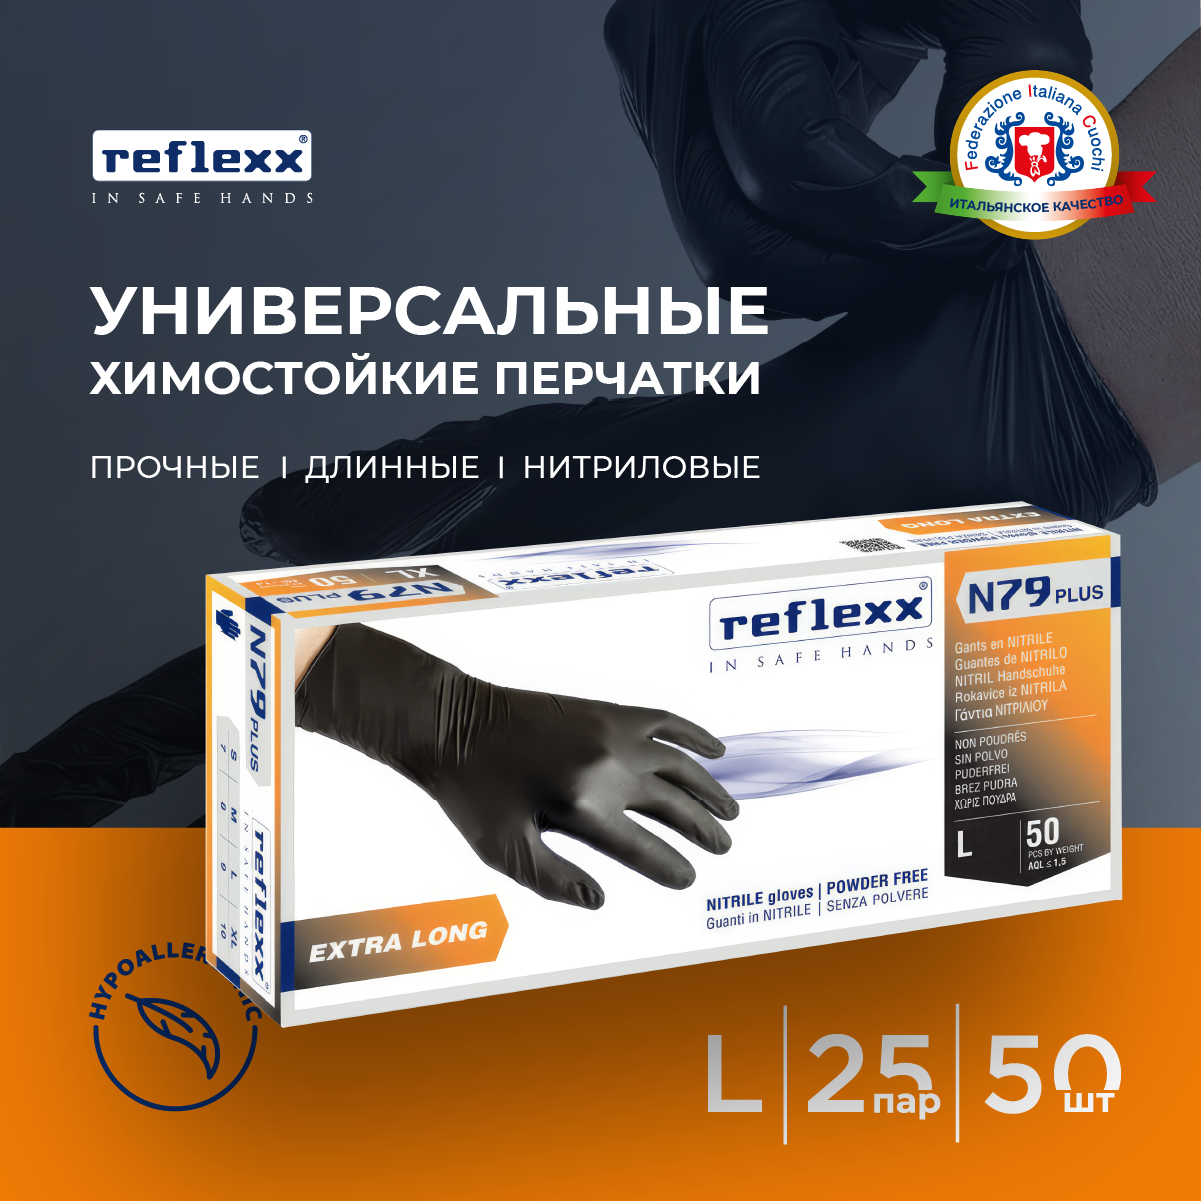 Reflexx | Одноразовые перчатки химостойкие сверхдлинные 30см. Размер-L. 7,7 гр. Толщина 0,14 мм.